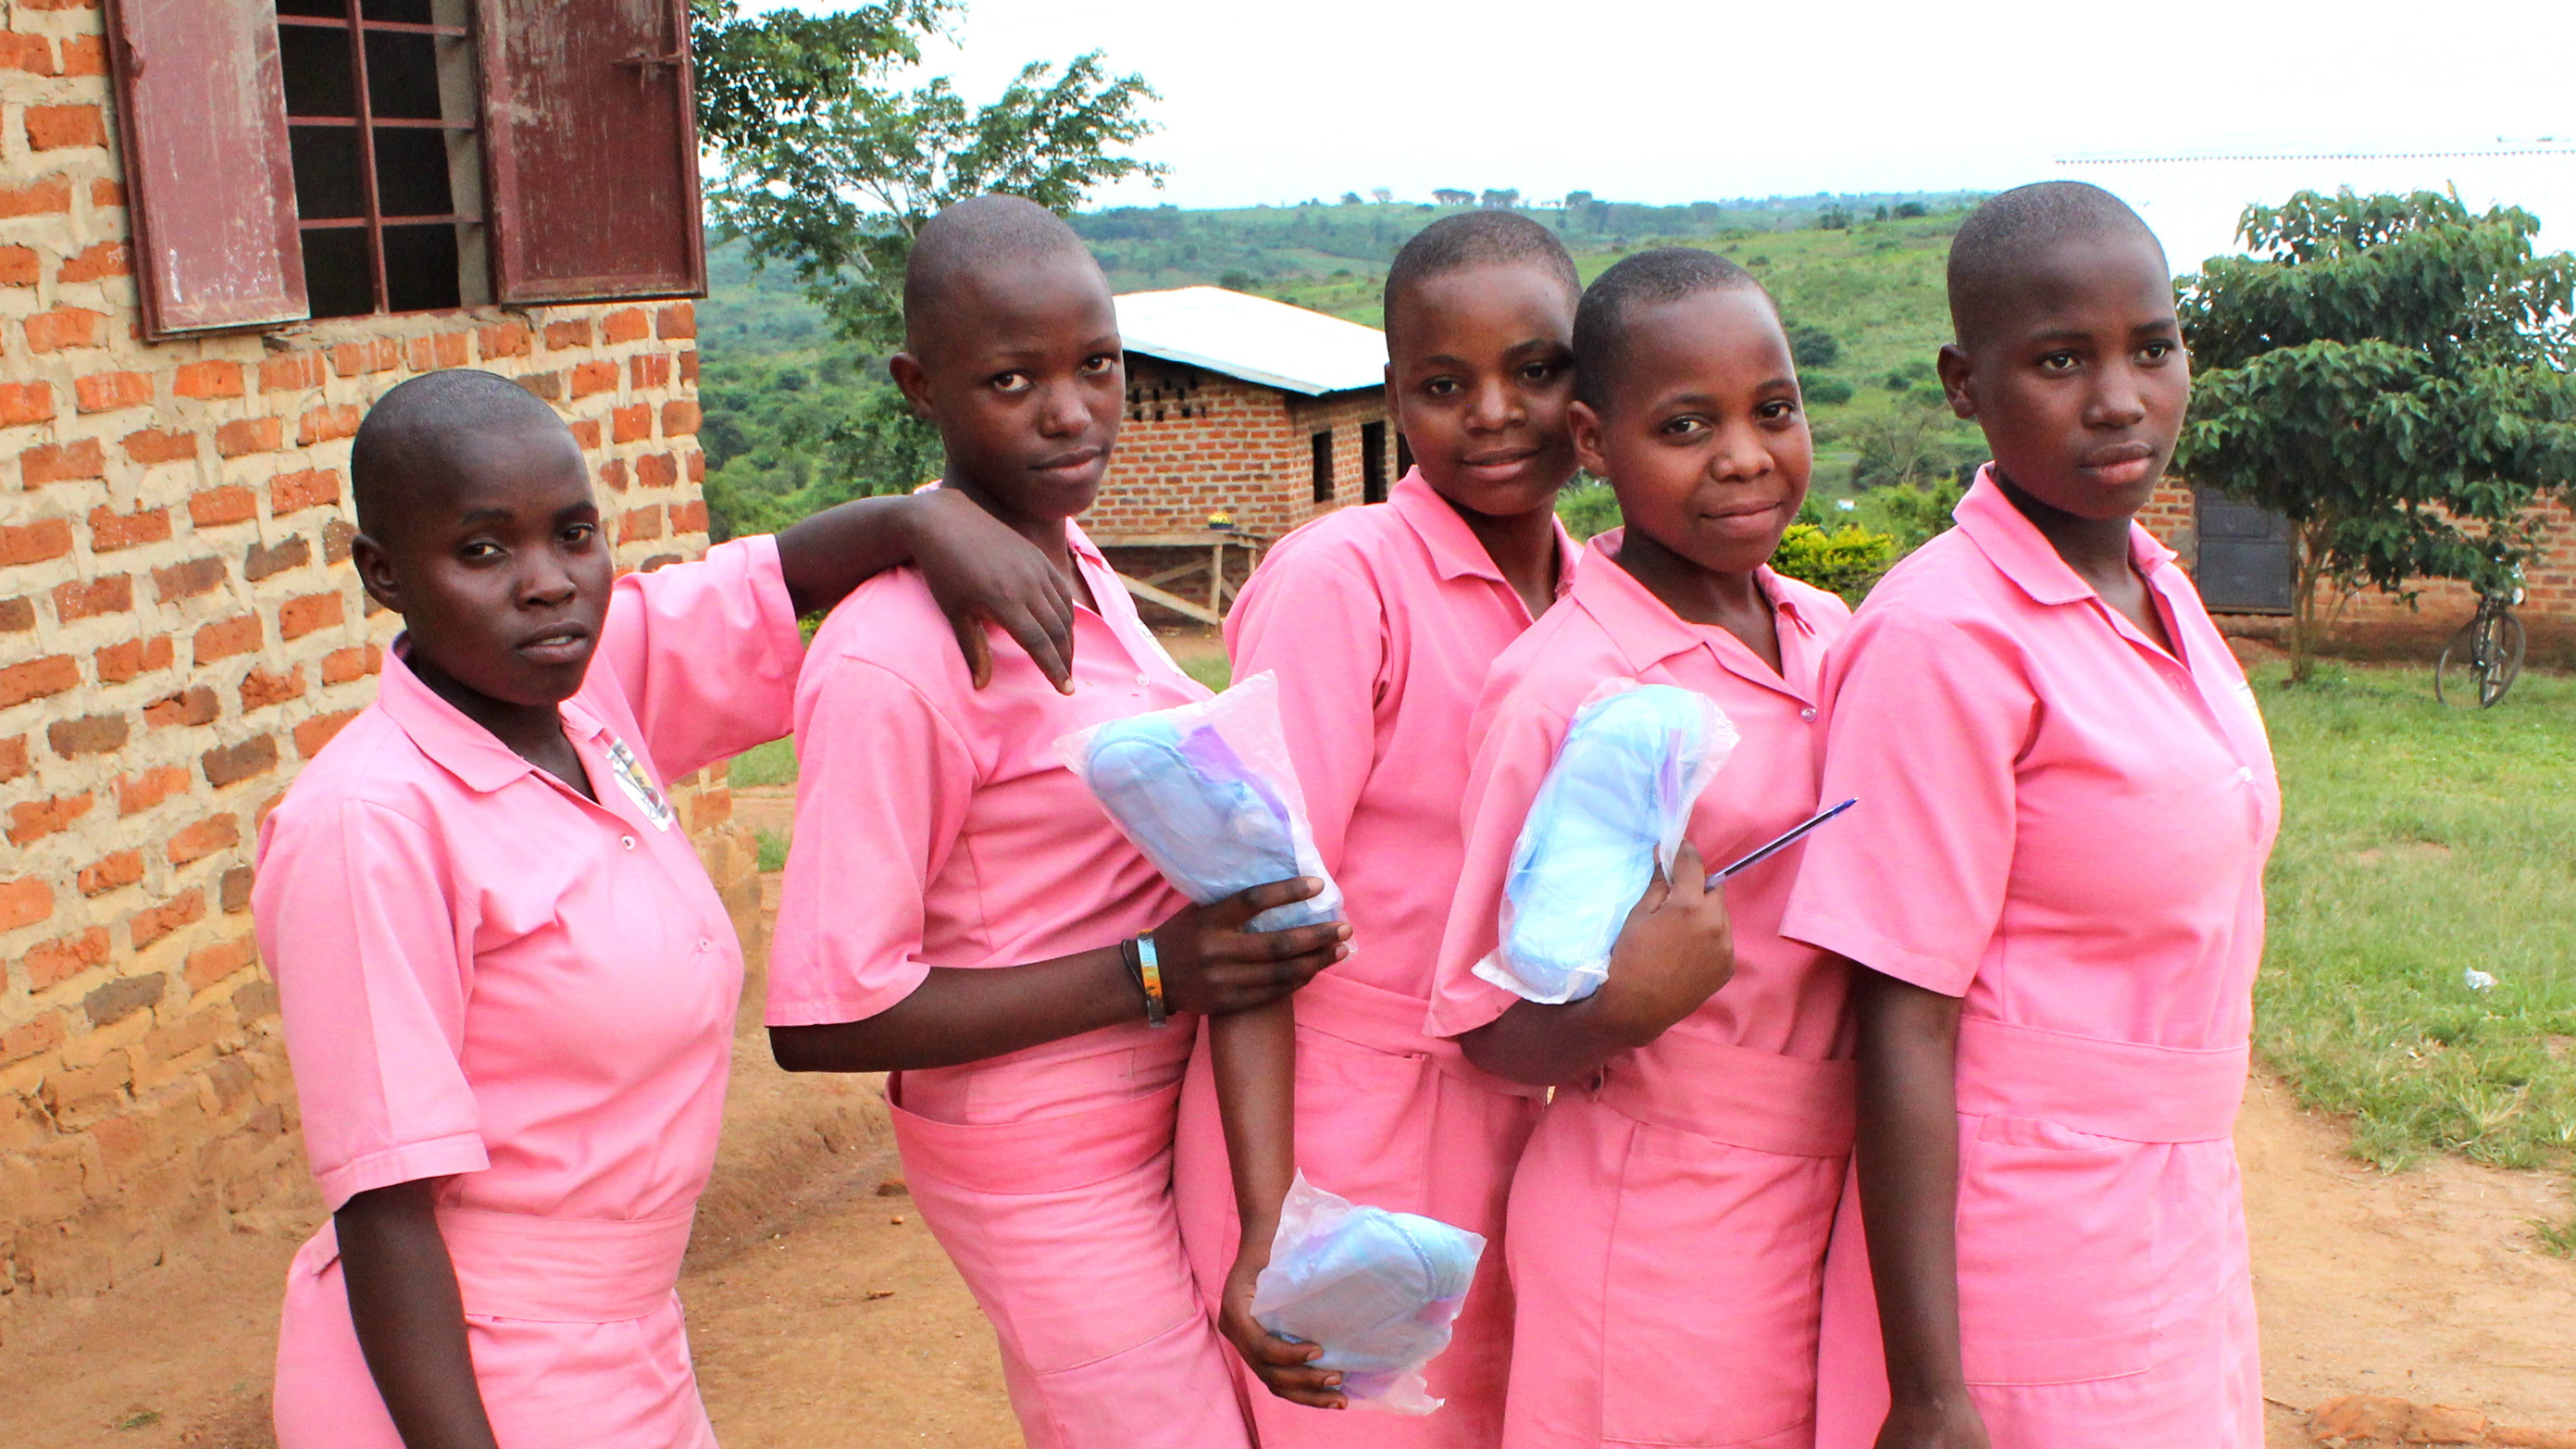 Girls changing sanitary pads